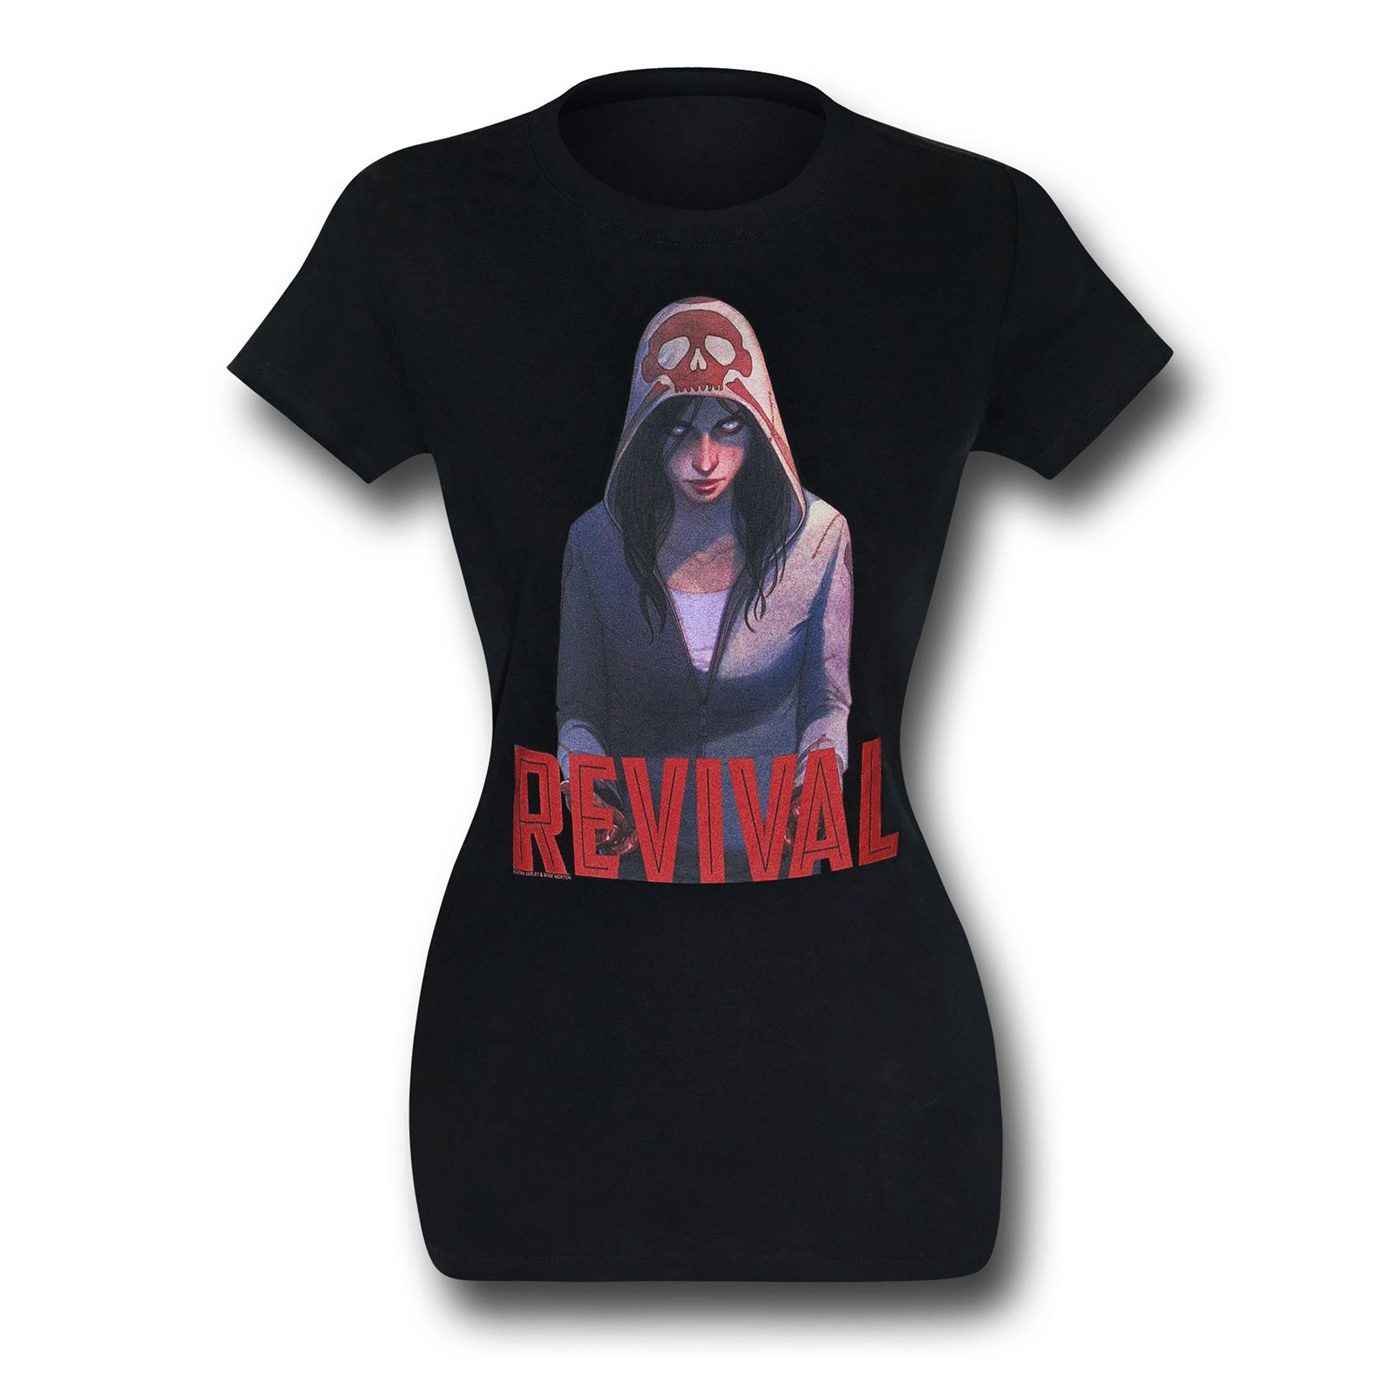 Revival Em on Black Women's T-Shirt